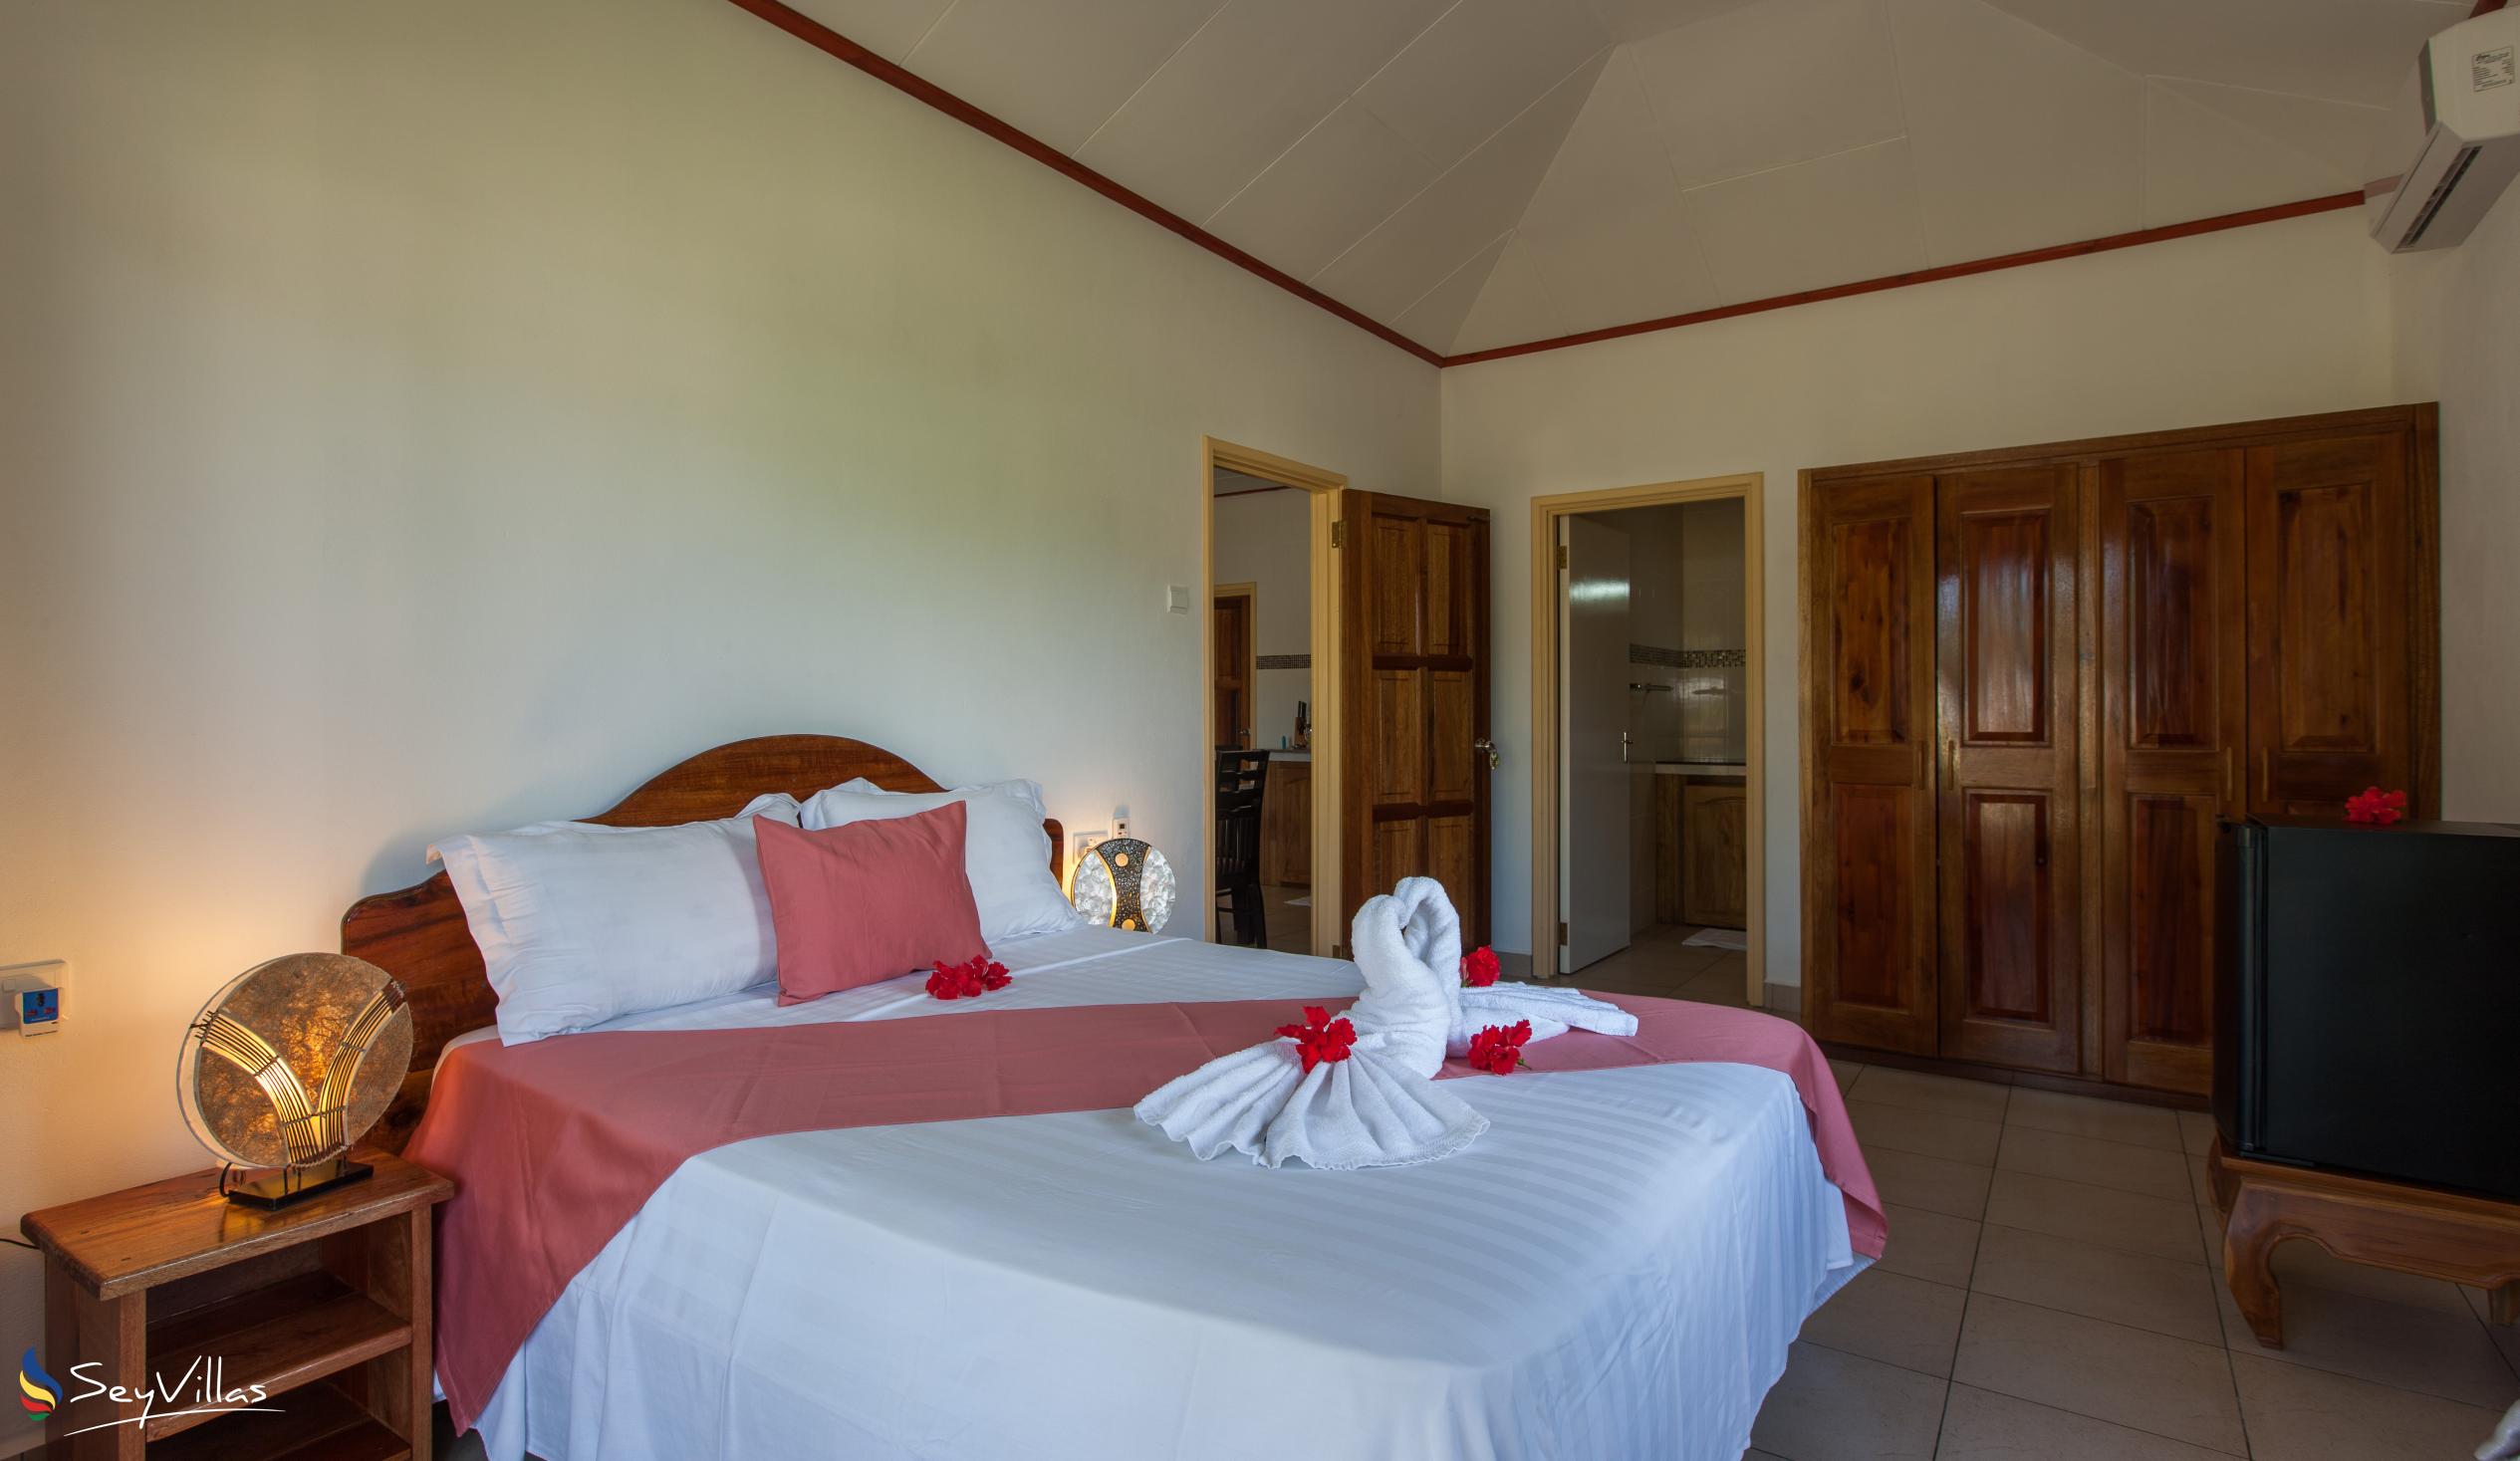 Foto 61: Hostellerie La Digue - Chalet mit 2 Schlafzimmern - La Digue (Seychellen)